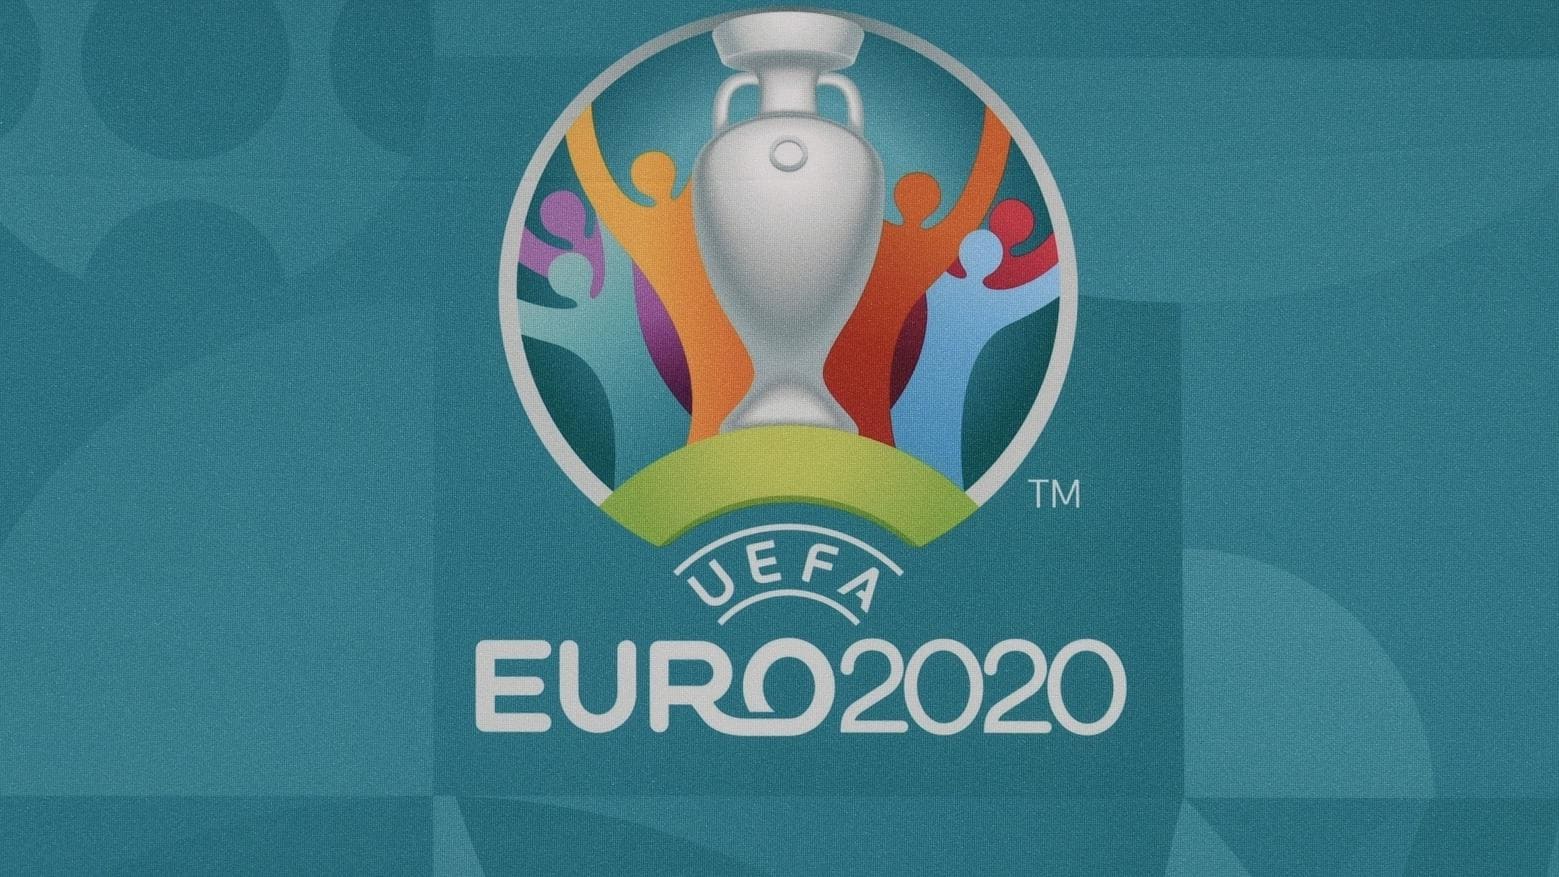 Công bố bài hát chính thức của Euro 2020 1